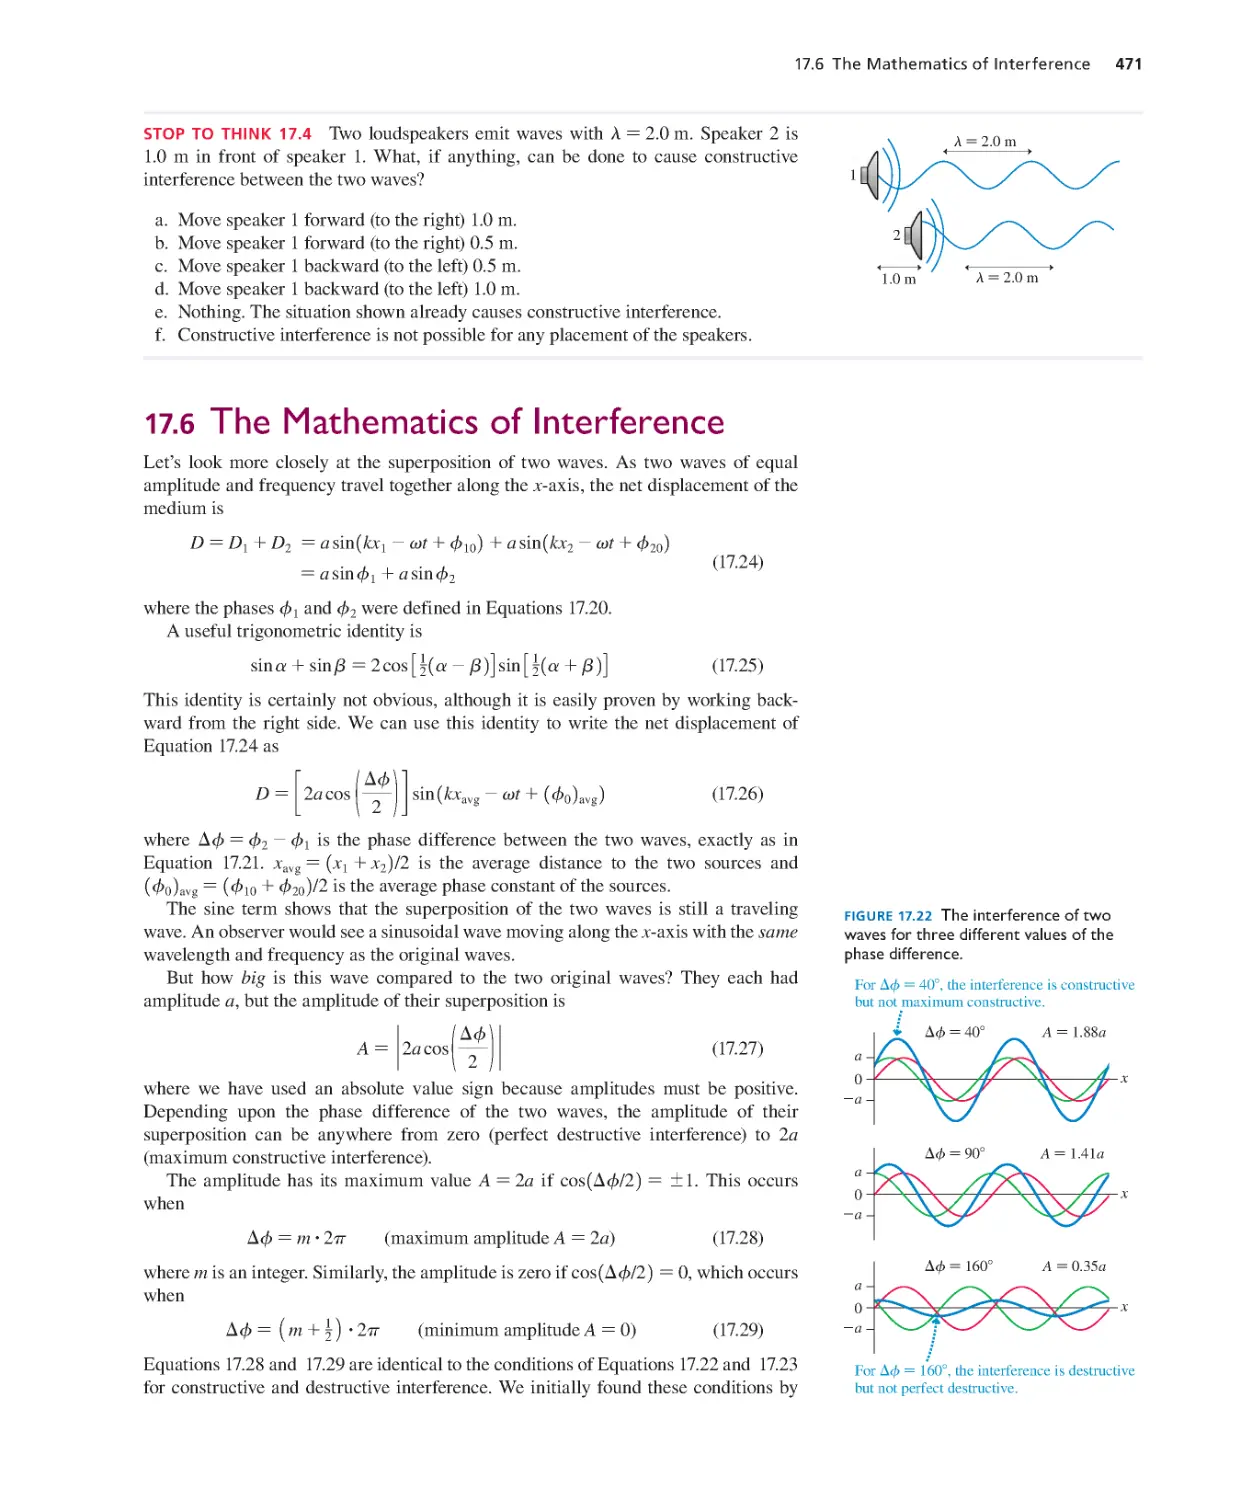 17.6. The Mathematics of Interference